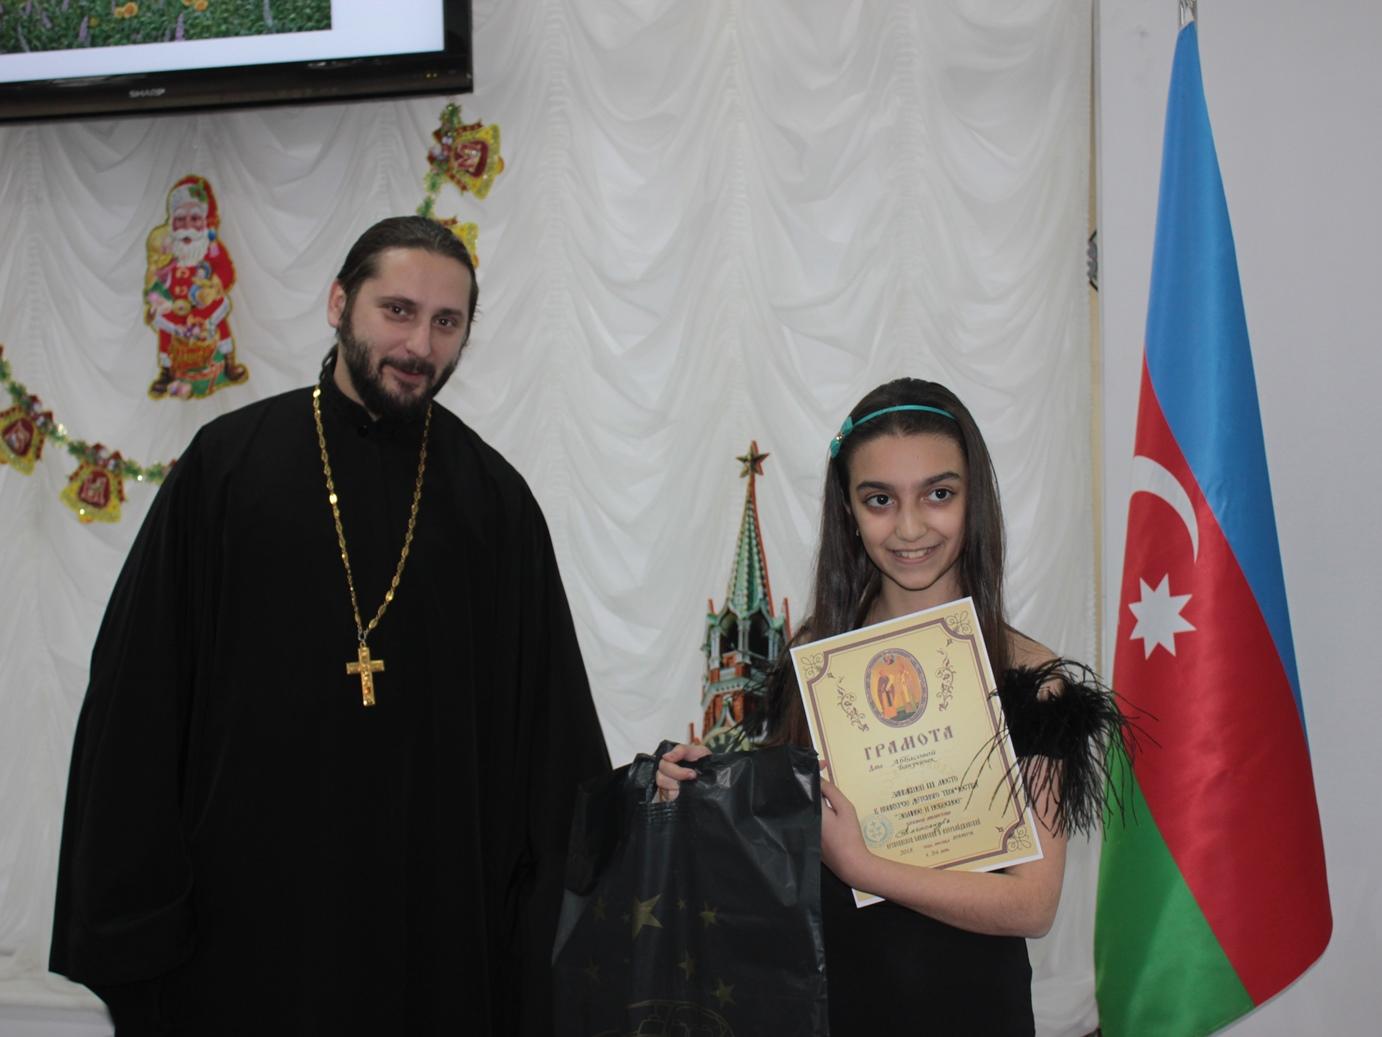 Награды победителям вручил архиепископ Бакинский и Азербайджанский Александр (ФОТО)